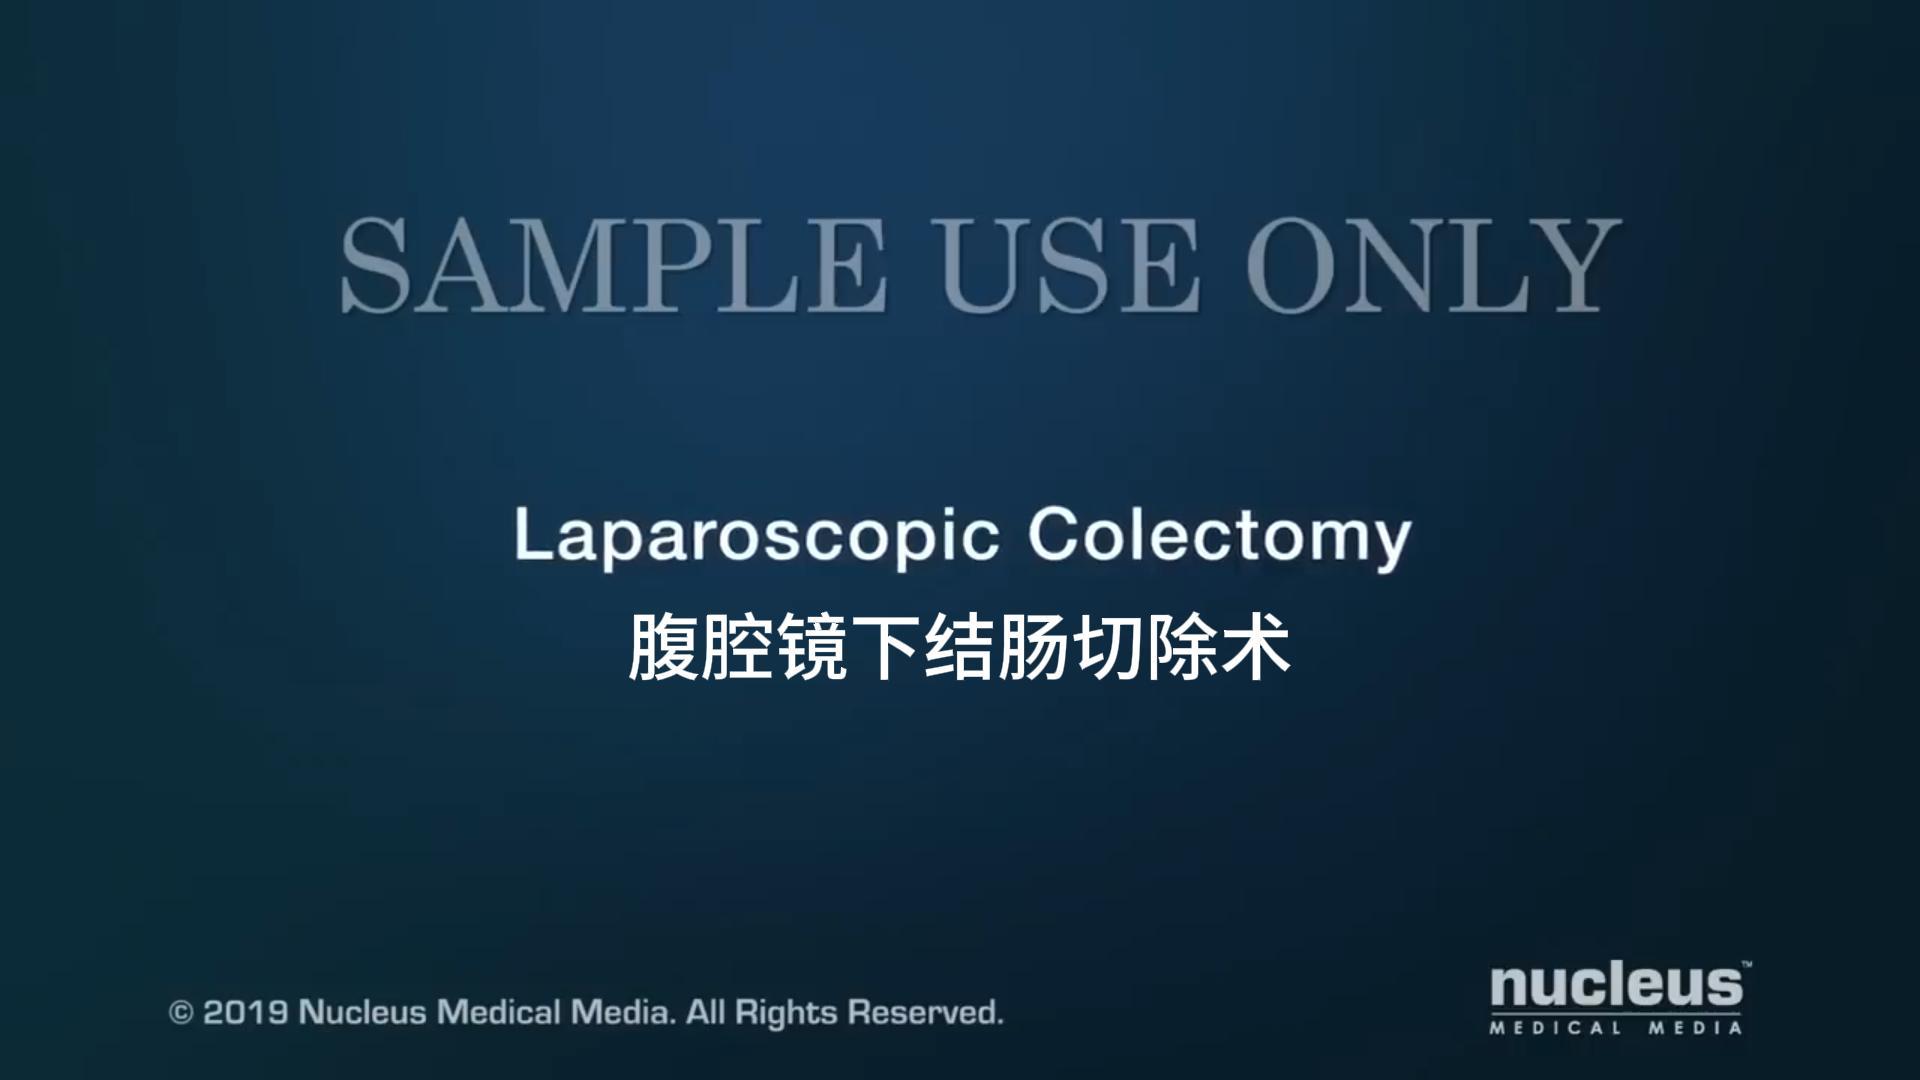 Kolektomia laparoskopowa: małoinwazyjna metoda zapewniająca precyzyjną i przejrzystą operację